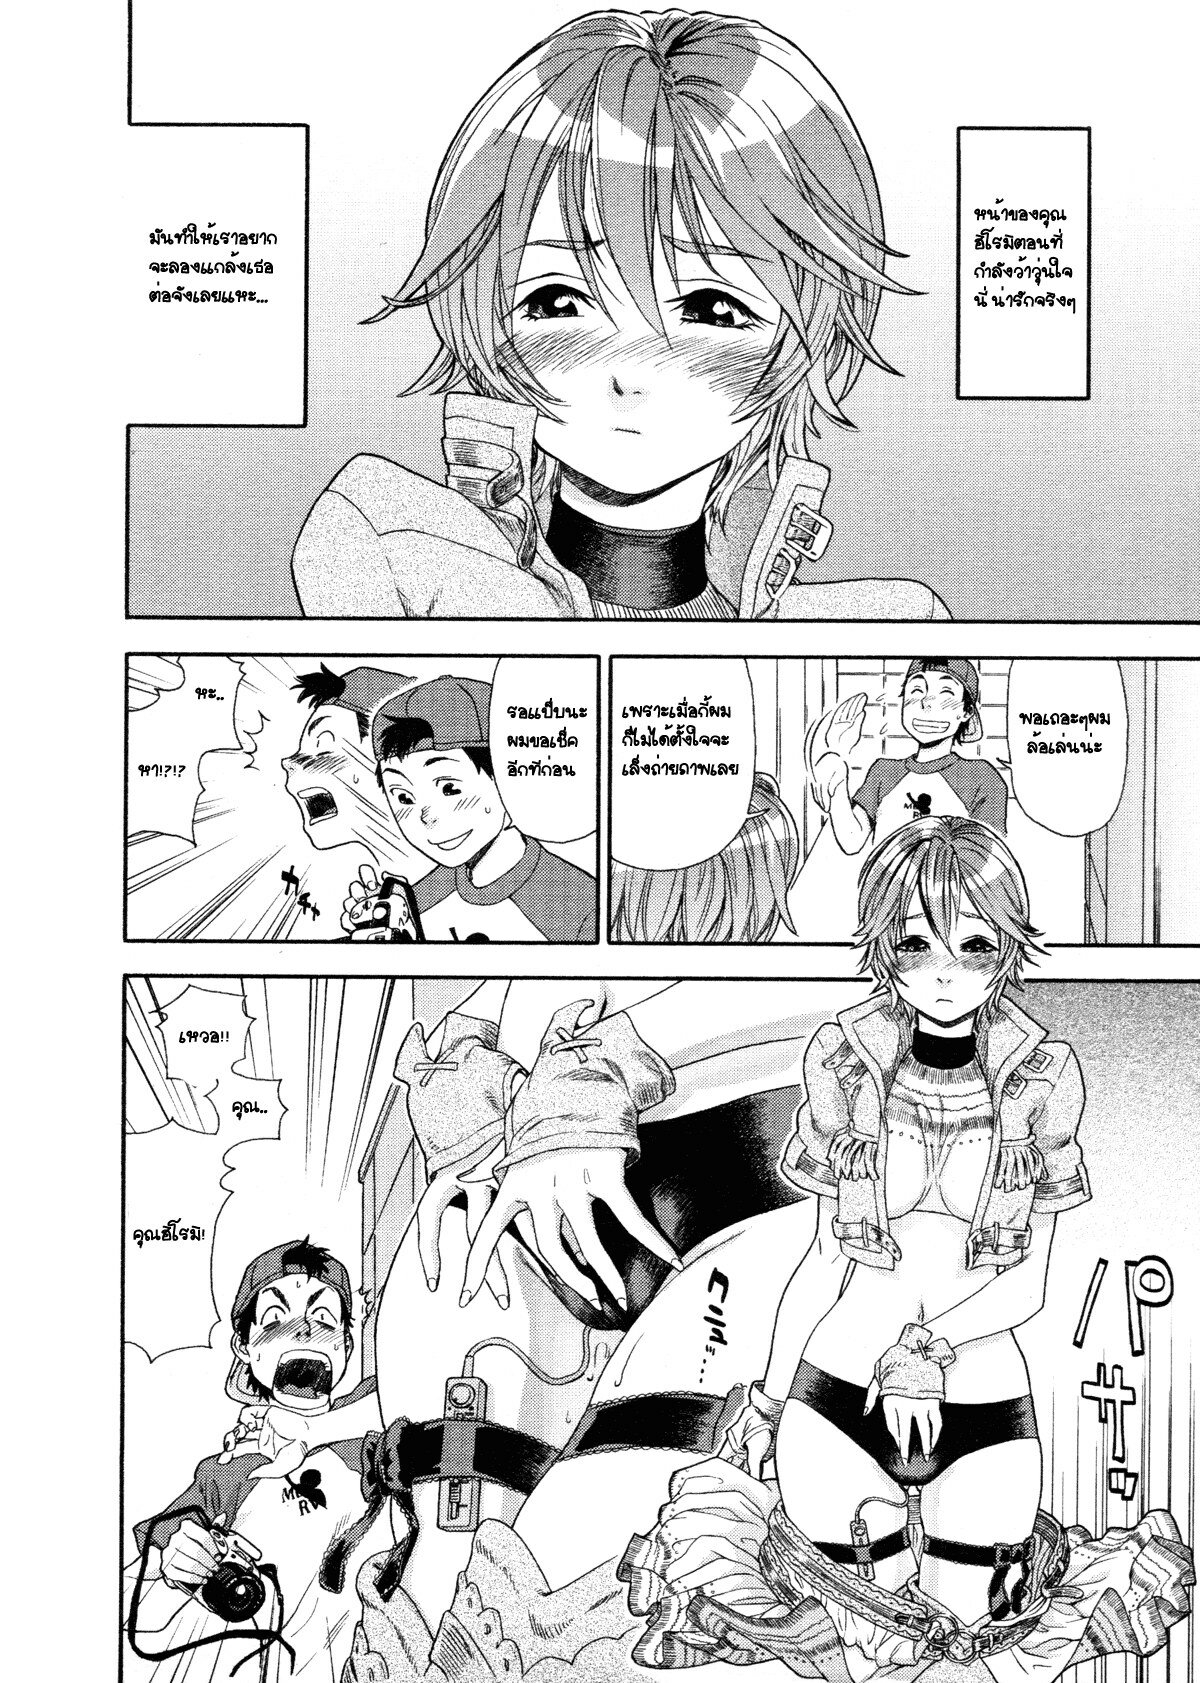 [Yamatogawa] COW GIRL =Aqua Bless chapter3= [Thai] page 8 full